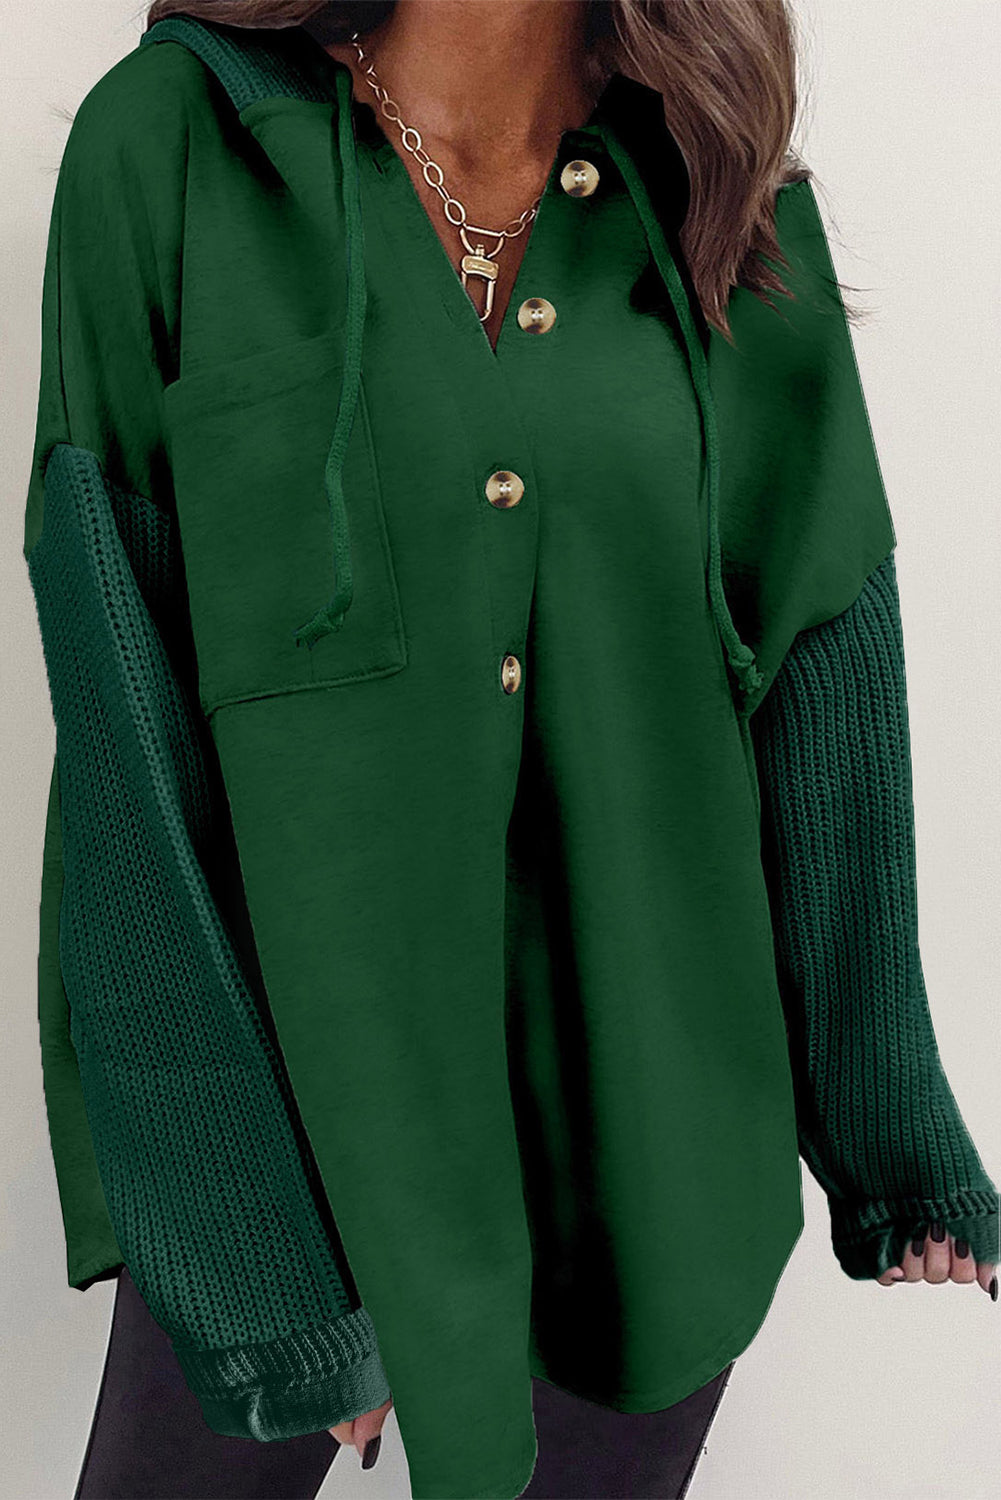 Giacca con cappuccio e maniche lavorate a maglia a contrasto verde nerastro con bottoni